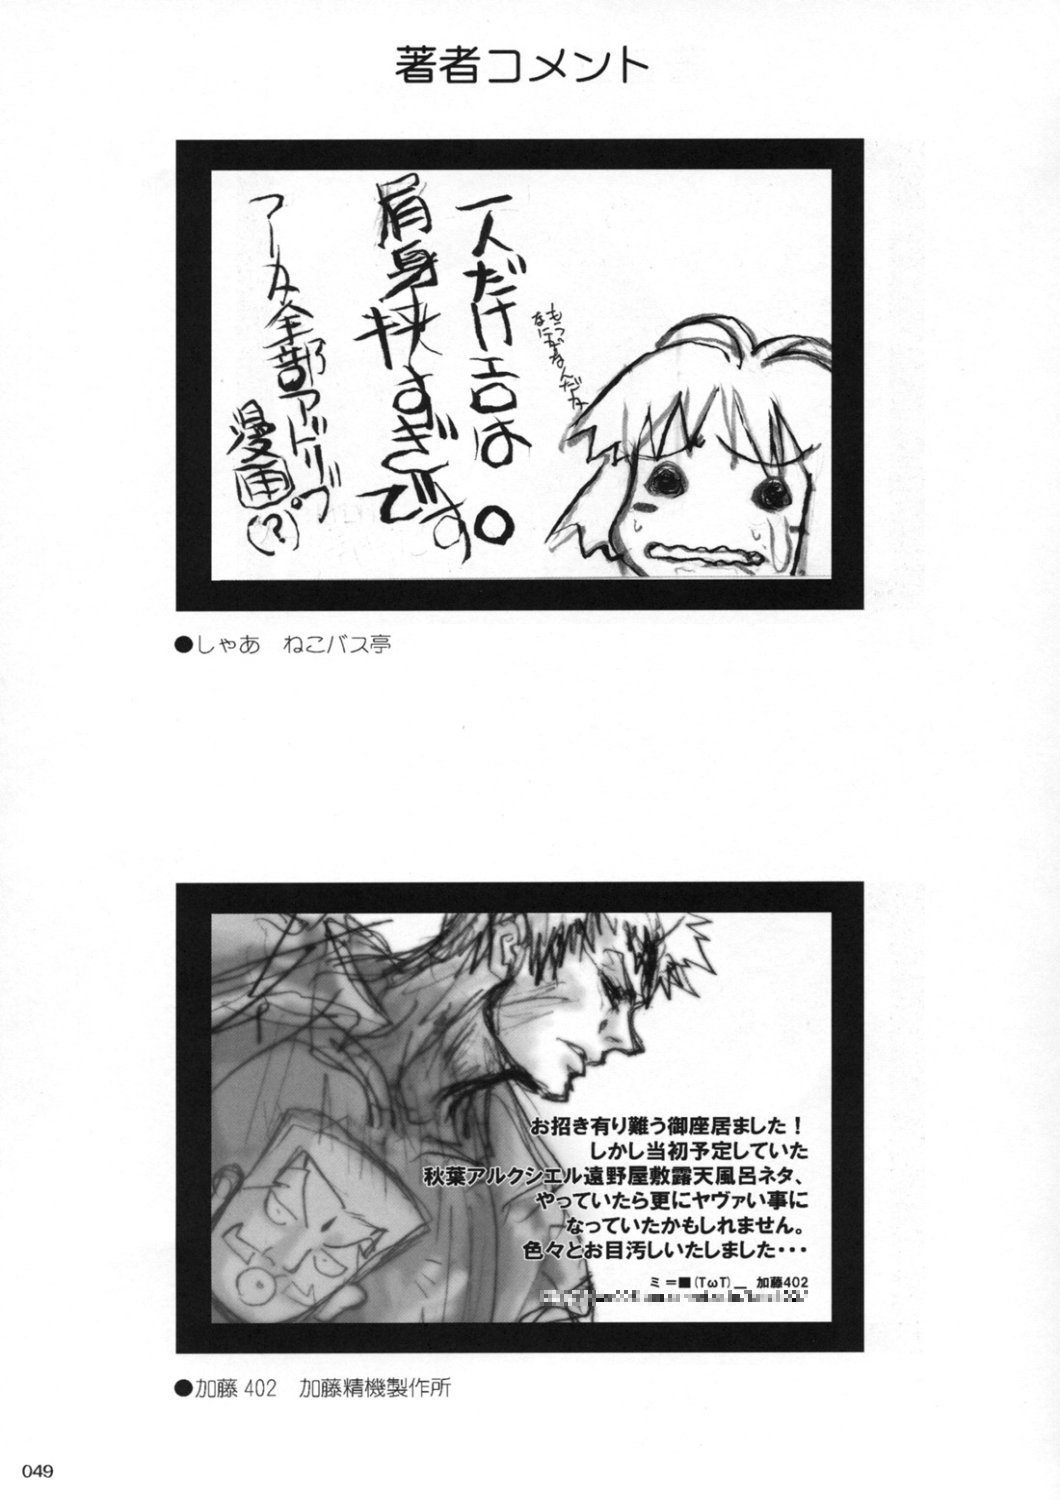 [Inochi no Furusato, Neko-bus Tei, Zangyaku Koui Teate] Akihamania [AKIHA MANIACS] (Tsukihime) page 48 full